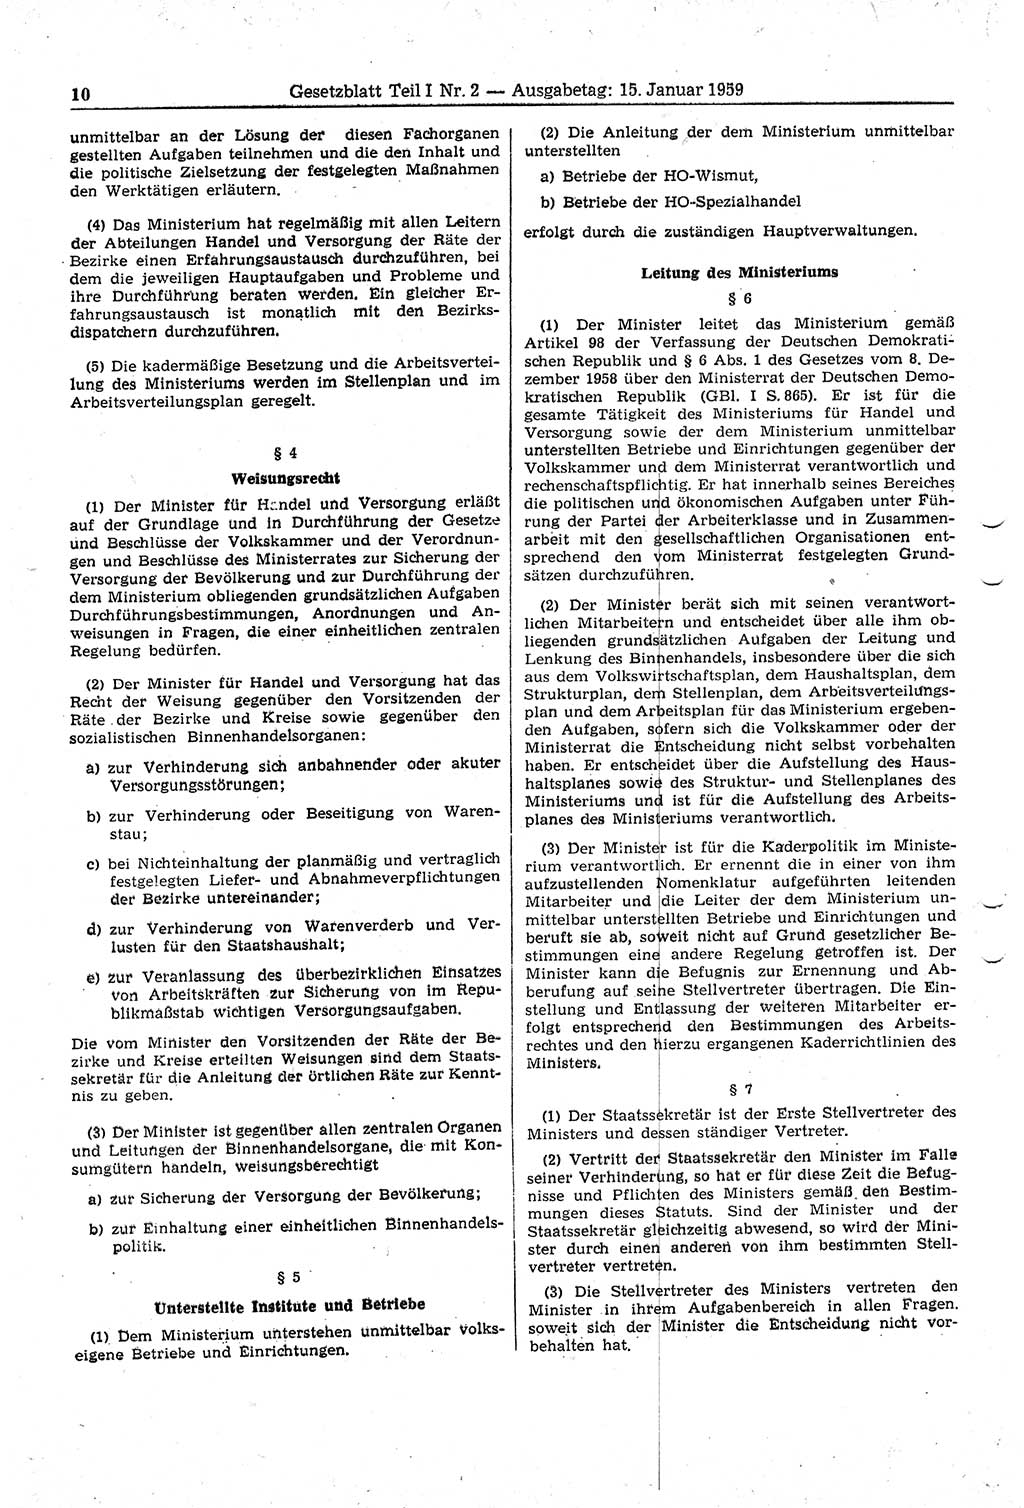 Gesetzblatt (GBl.) der Deutschen Demokratischen Republik (DDR) Teil Ⅰ 1959, Seite 10 (GBl. DDR Ⅰ 1959, S. 10)